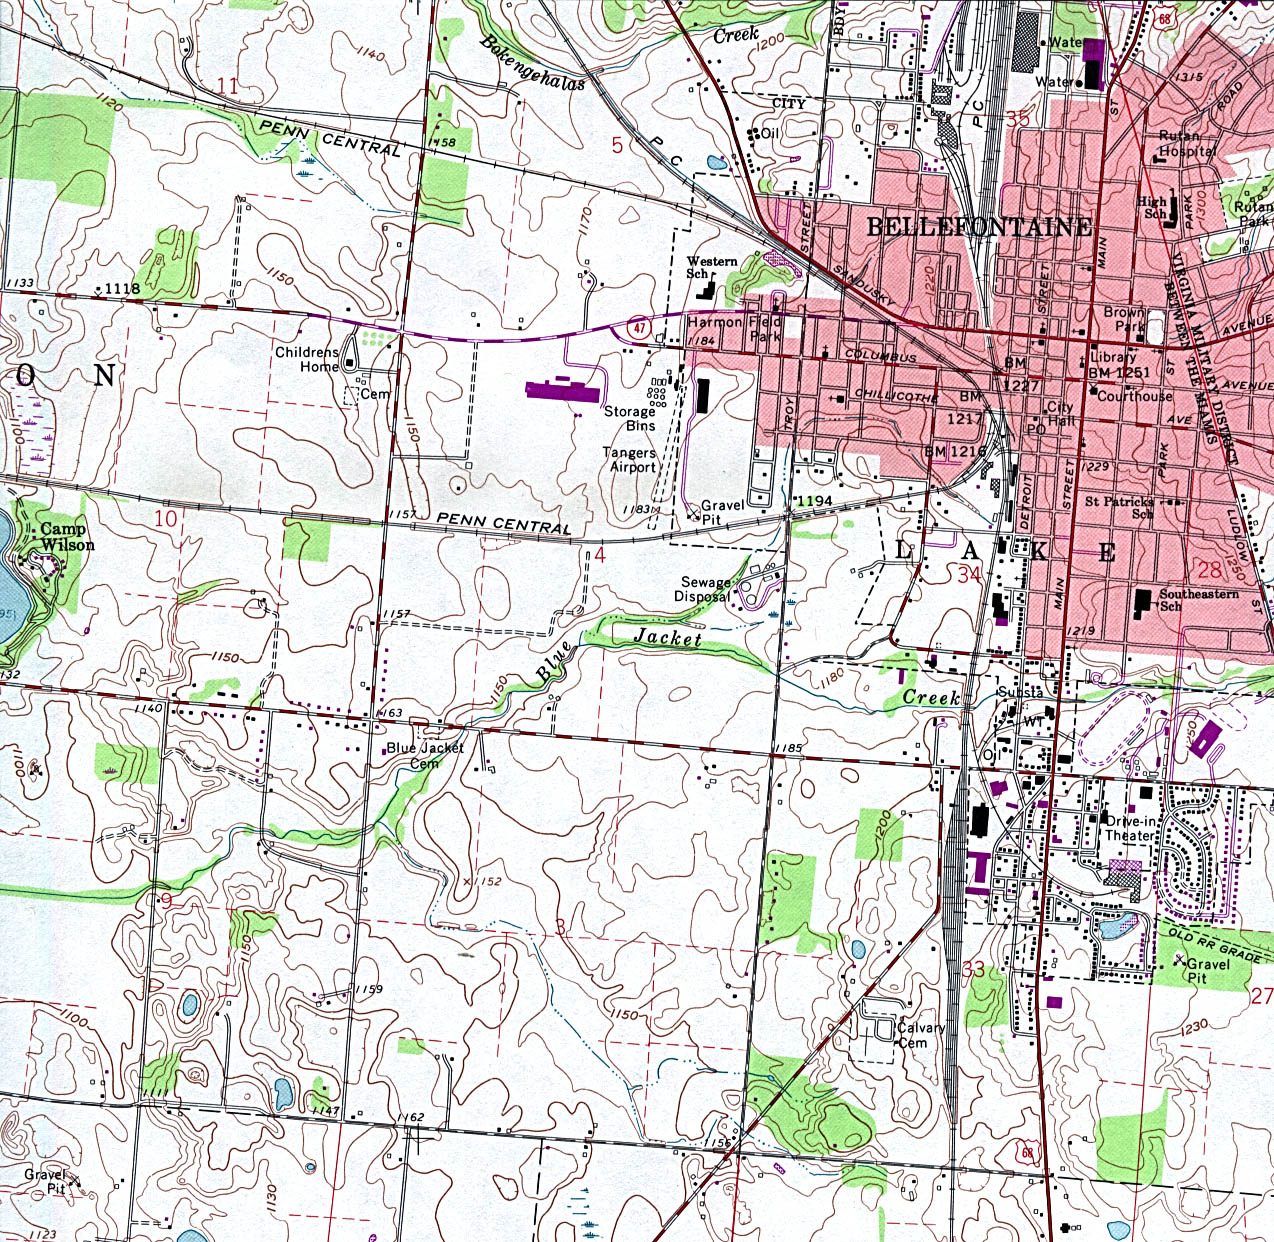 Mapa Topográfico de la Ciudad de Bellefontaine, Ohio, Estados Unidos